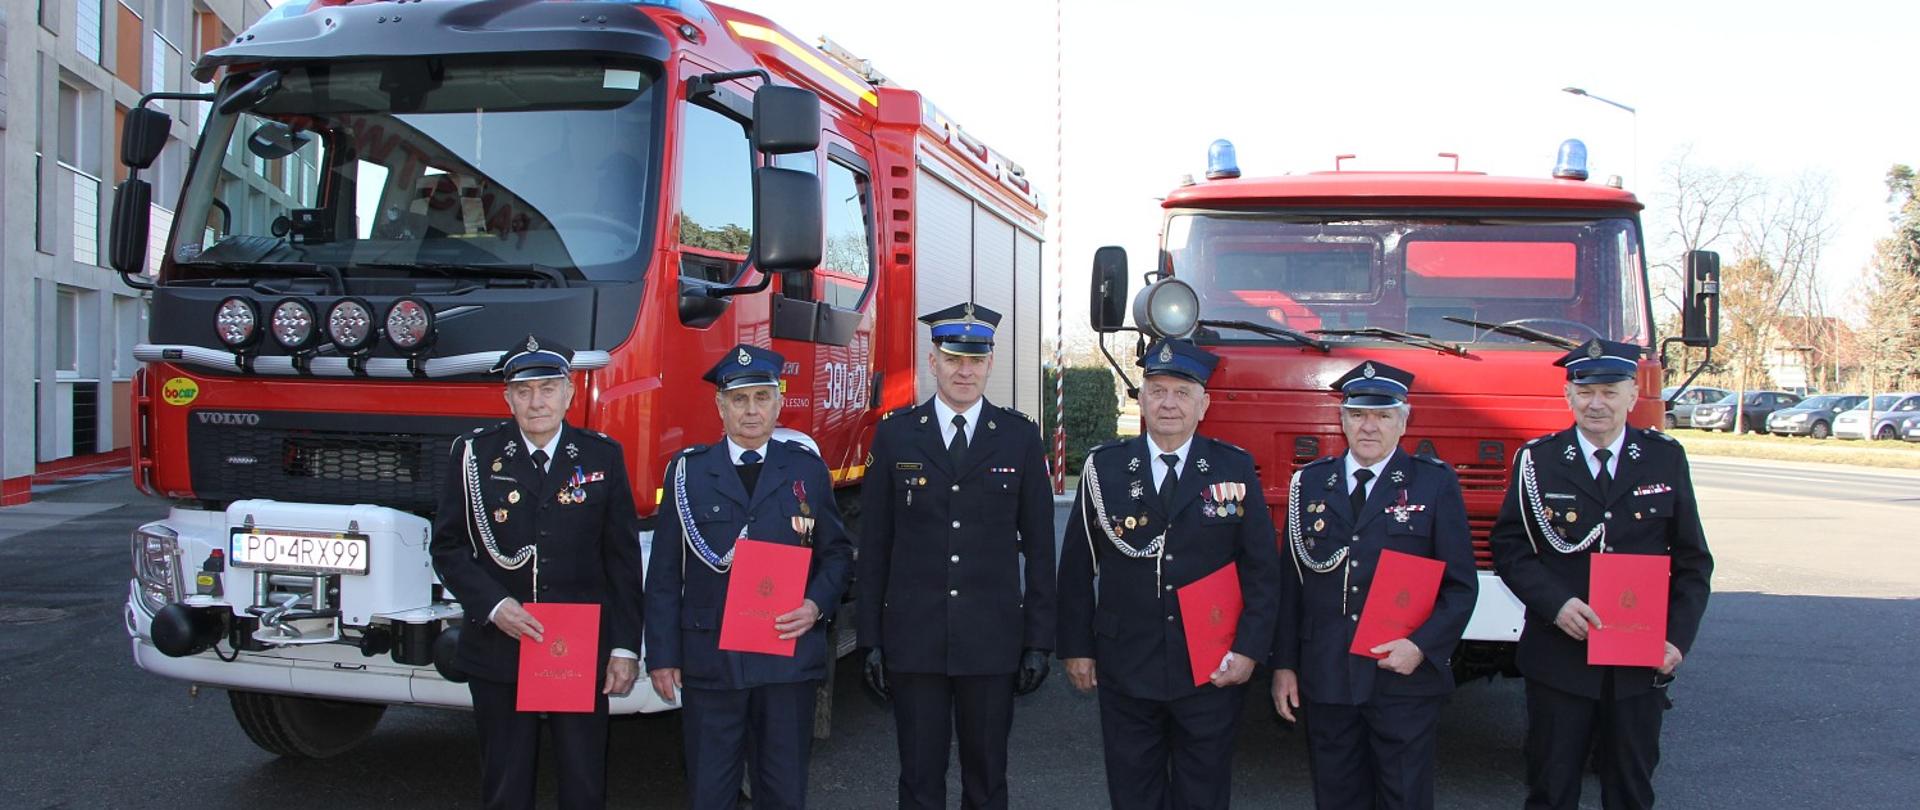 strażacy OSP stojaa w szeregu w mundurach wyjściowych, w środku stoi strażak PSP, za nimi dwa czerwone strażackie samochody